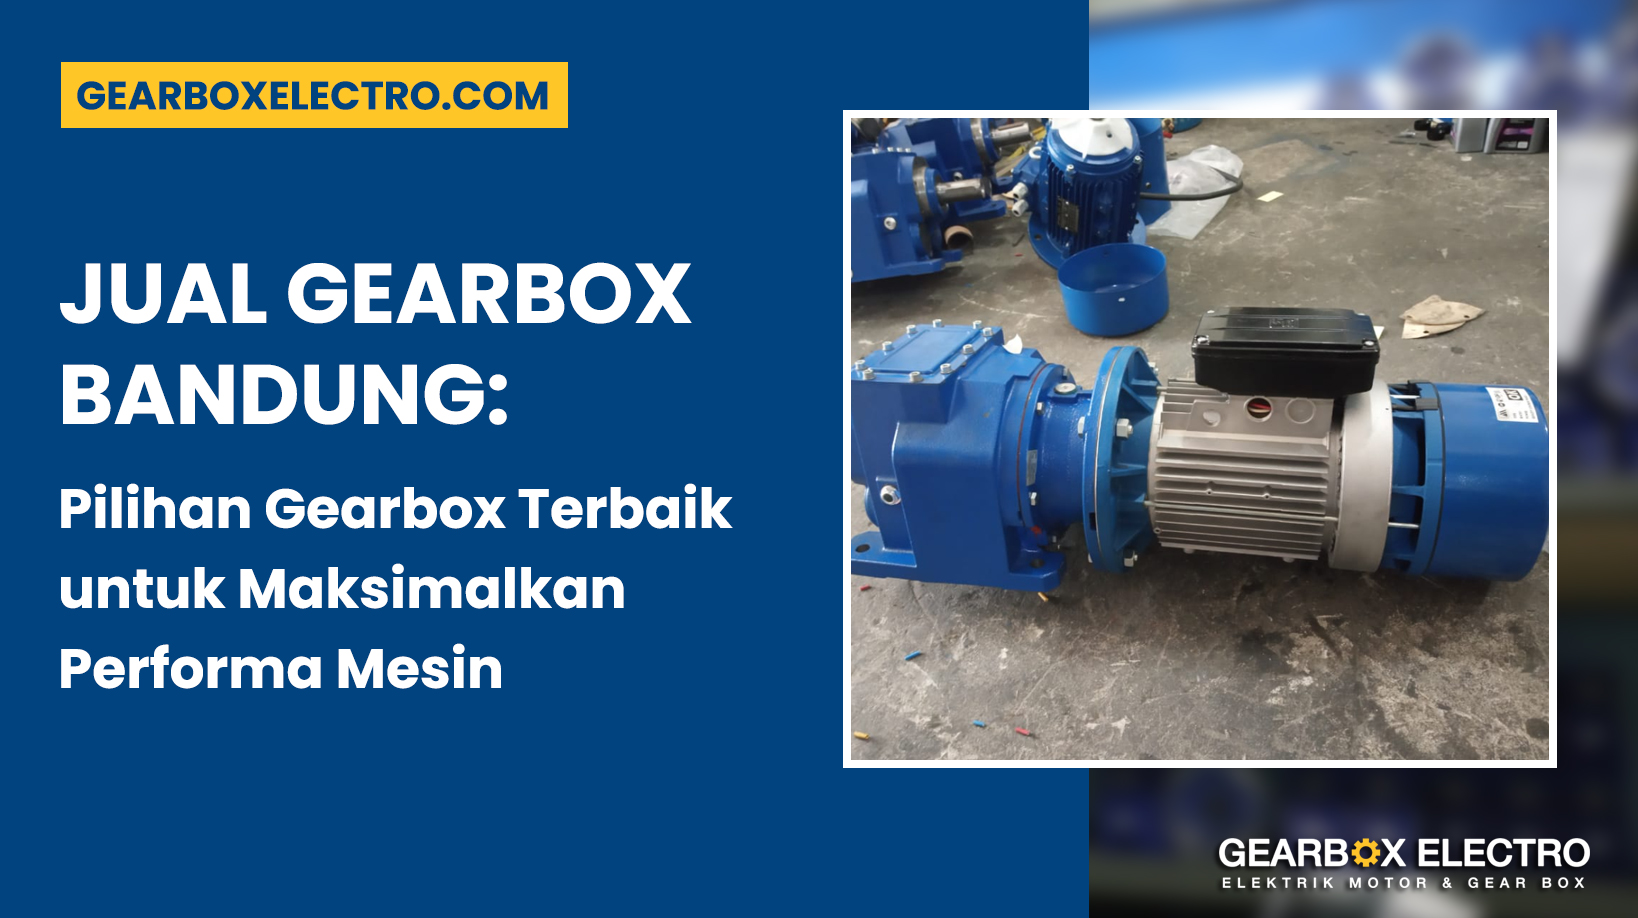 Jual Gearbox Bandung: Pilihan Gearbox Terbaik untuk Maksimalkan Performa Mesin